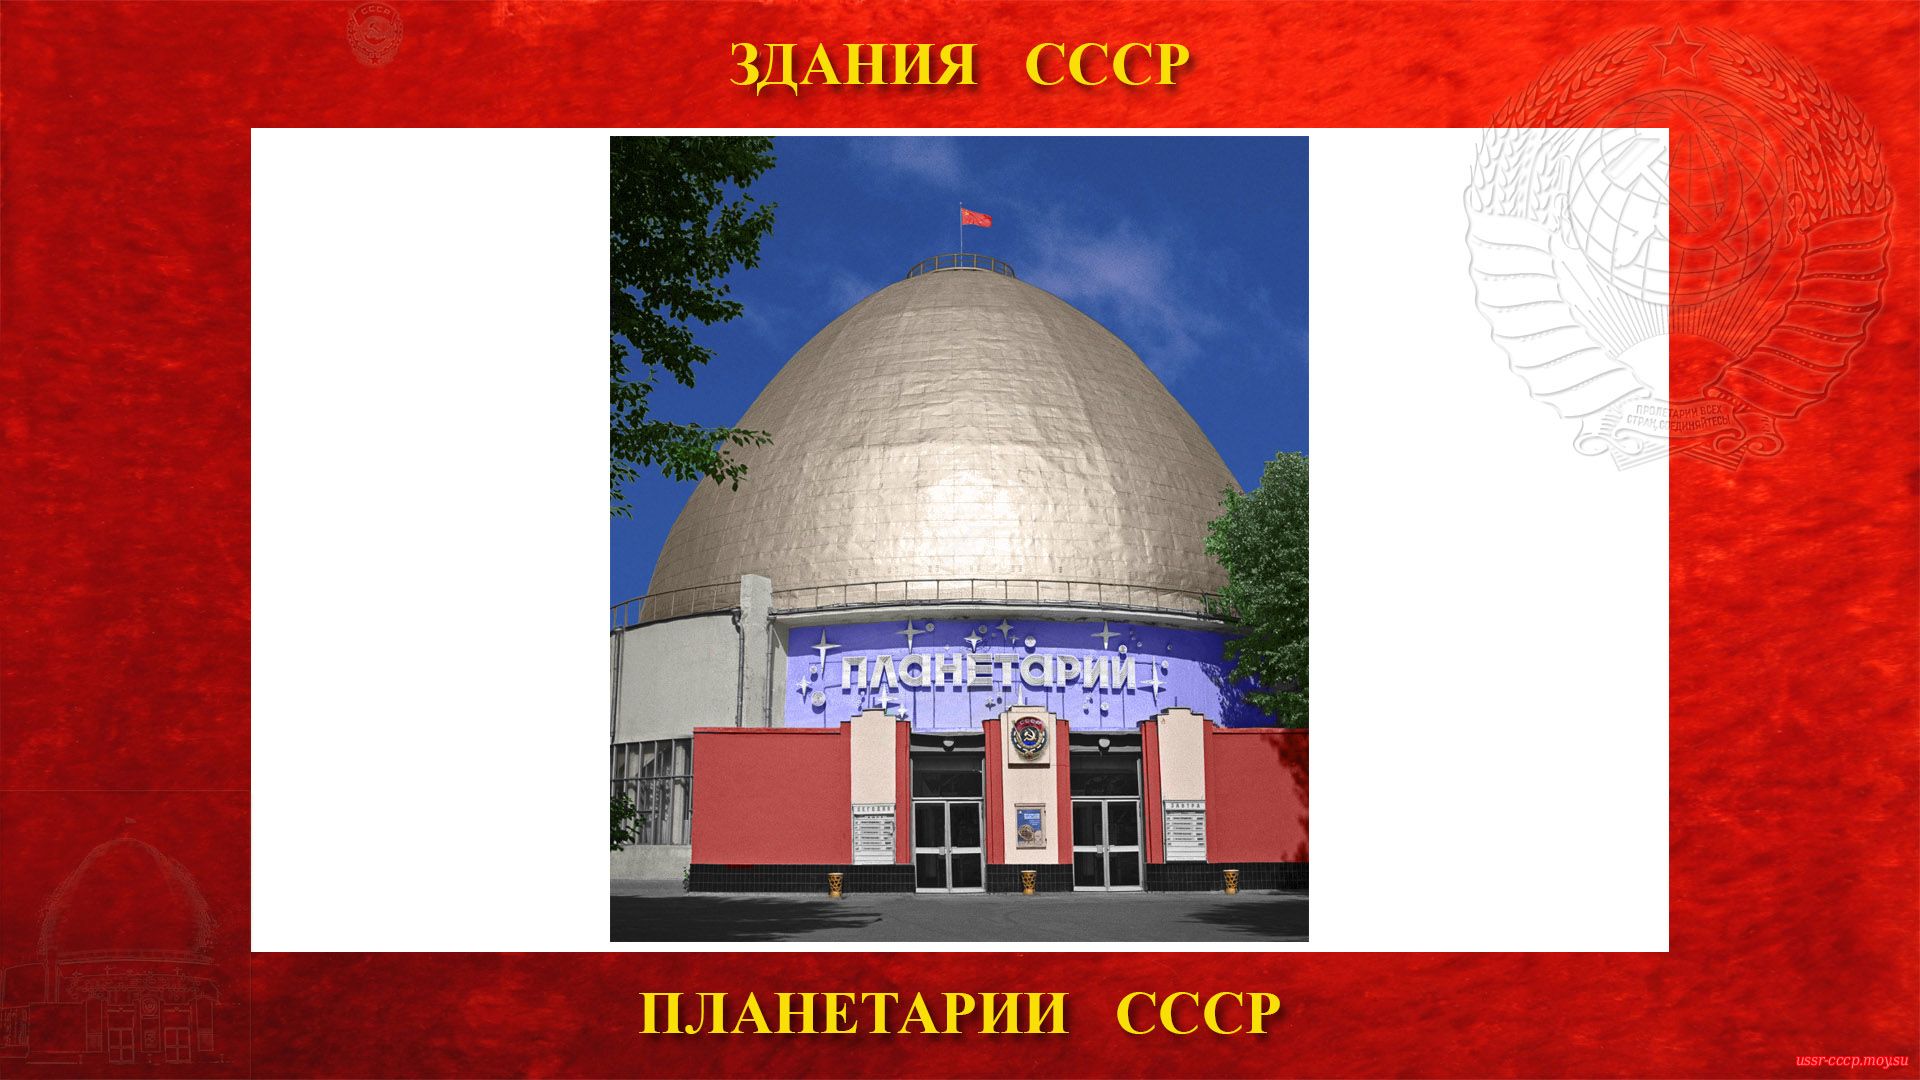 Московский планетарий  — Московский ордена Трудового Красного Знамени планетарий в Москве